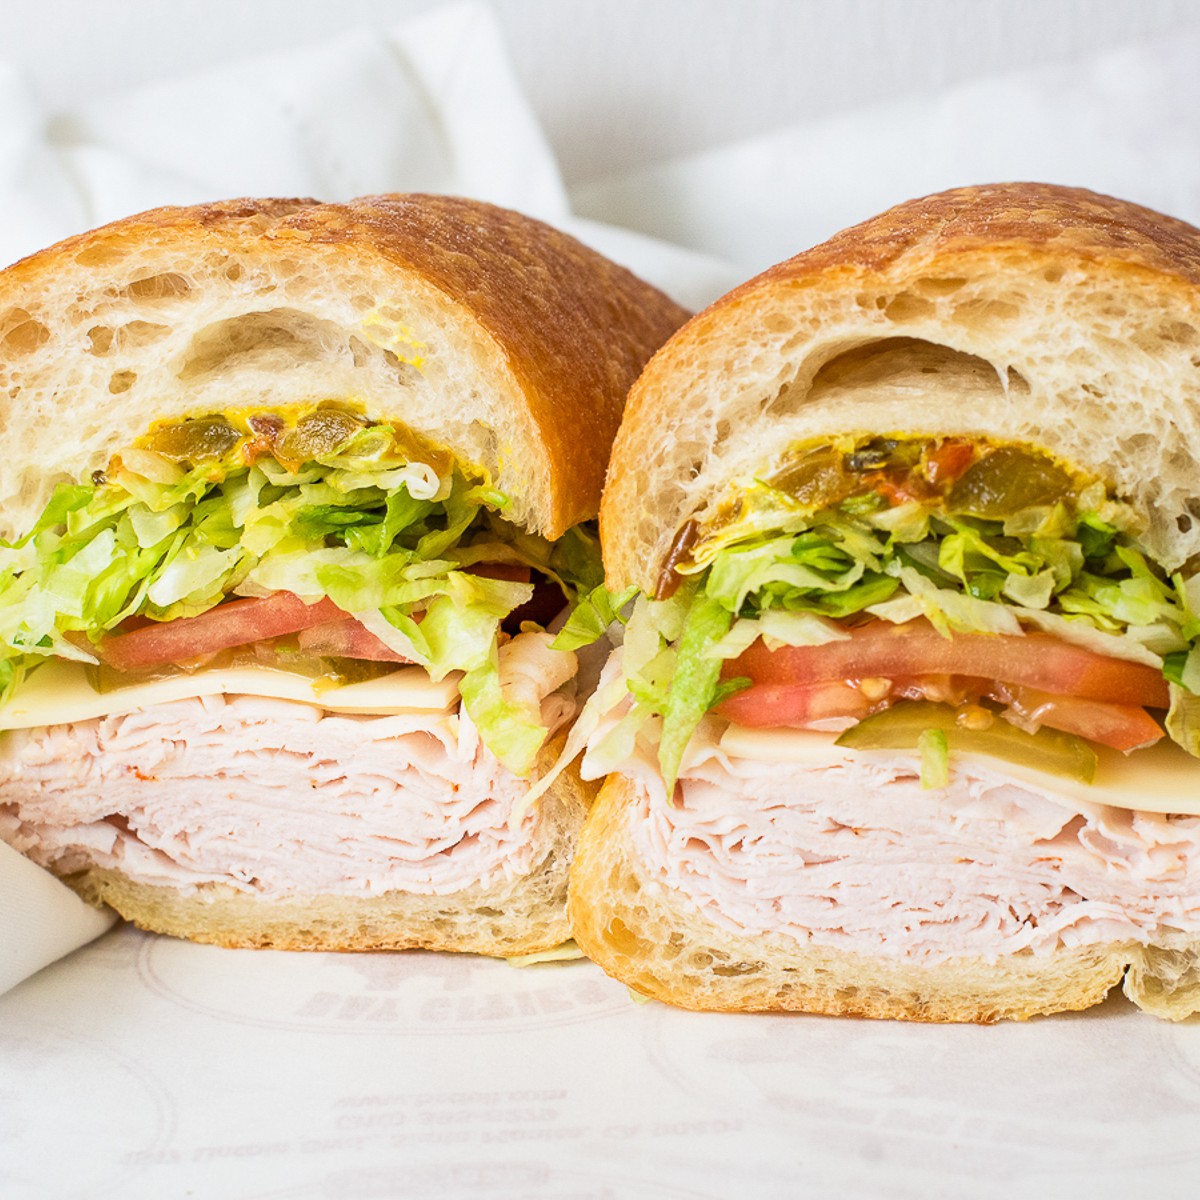 Subway Tuna v. My Tuna Sandwich Recipe - Mortadella Head